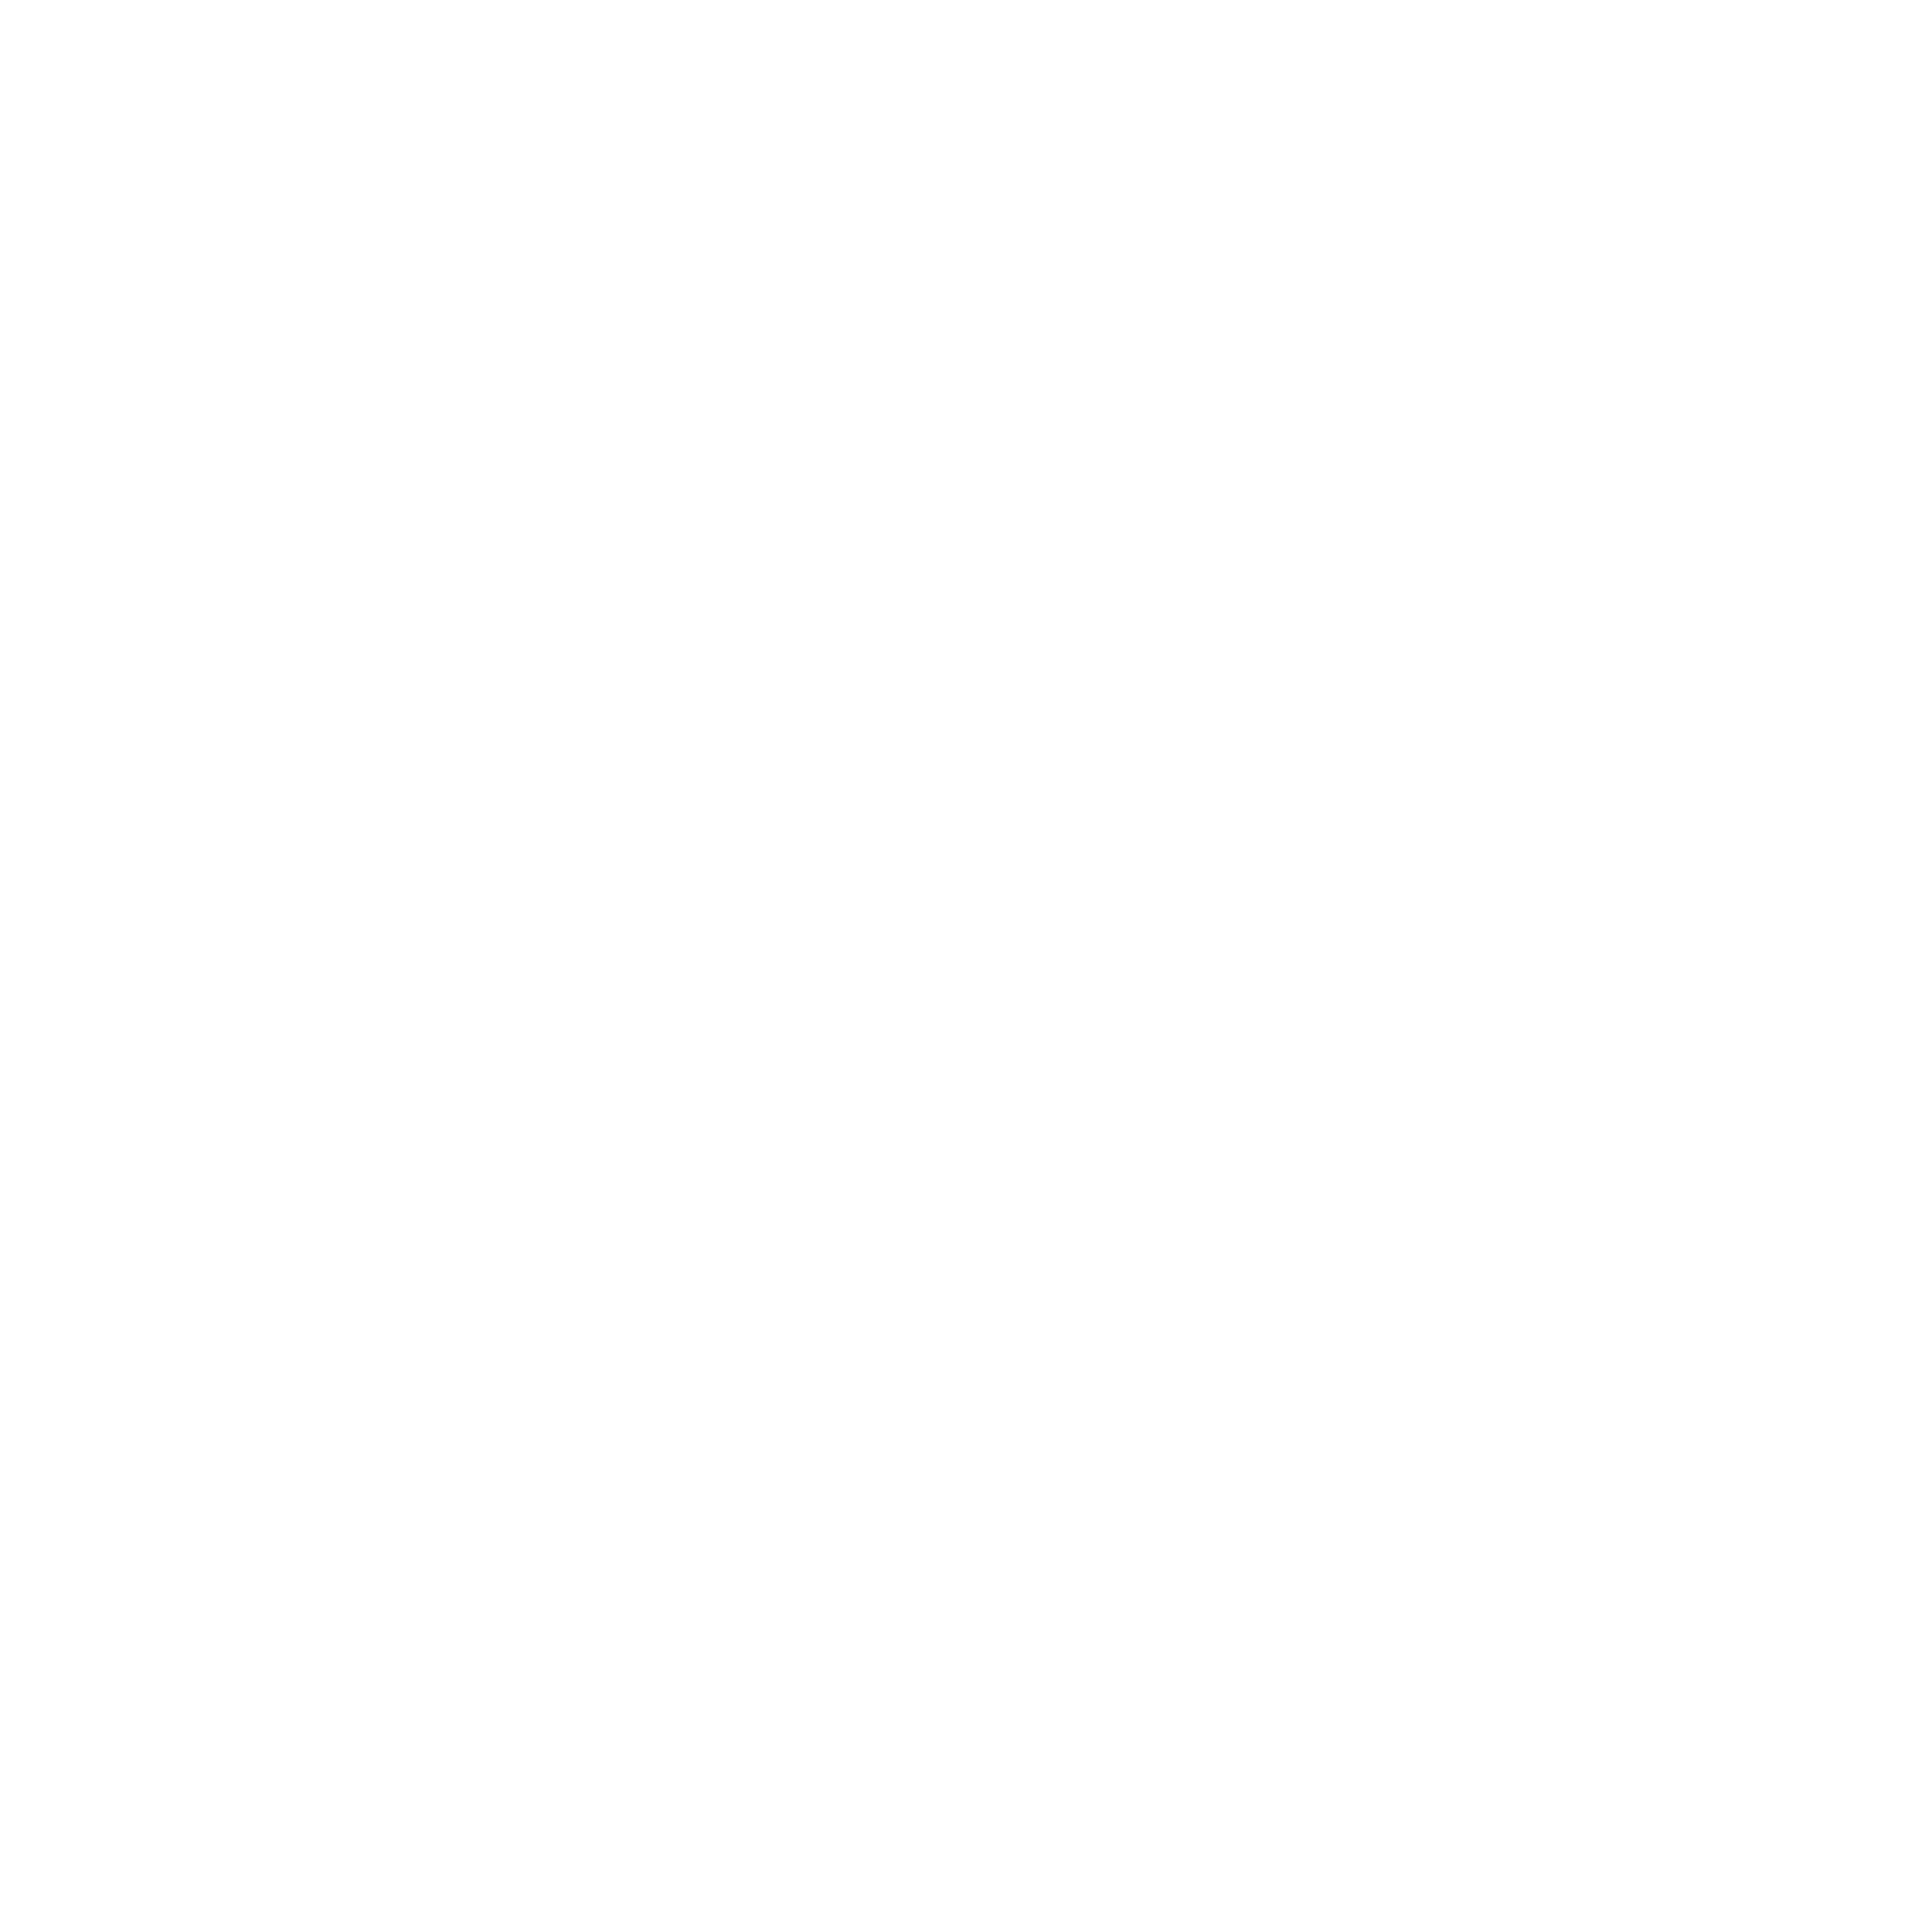 USB4 standard